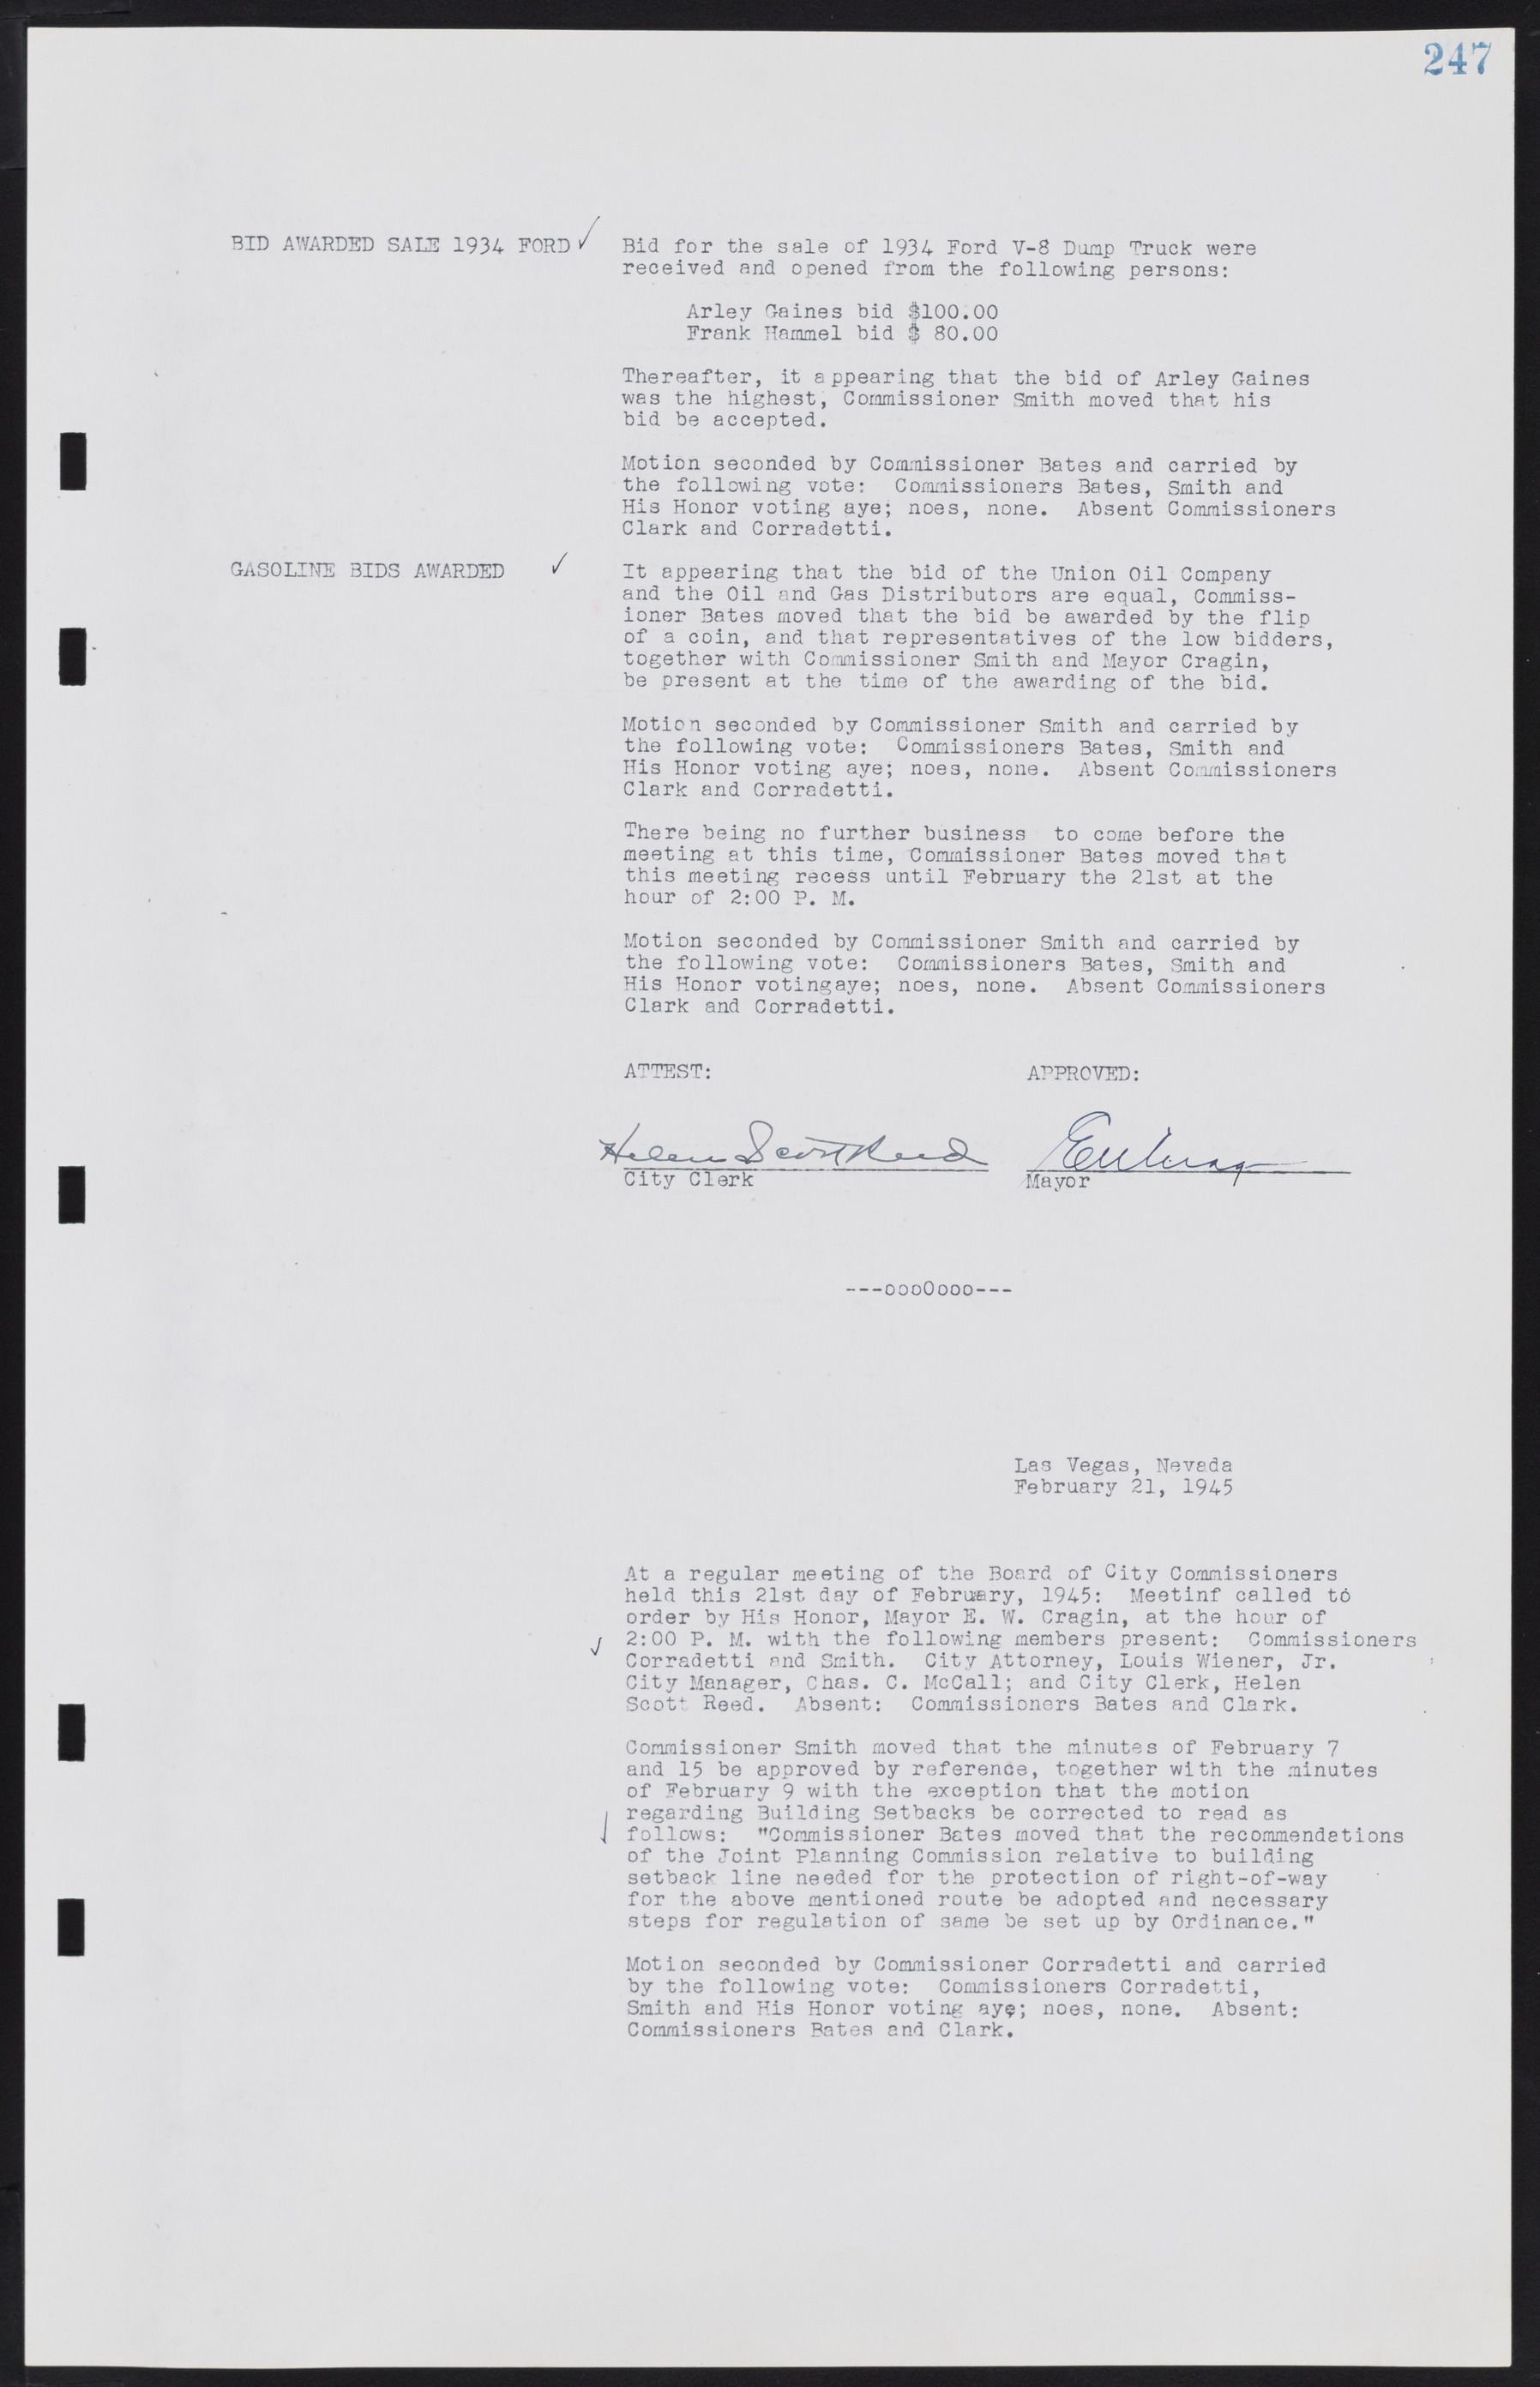 Las Vegas City Commission Minutes, August 11, 1942 to December 30, 1946, lvc000005-269